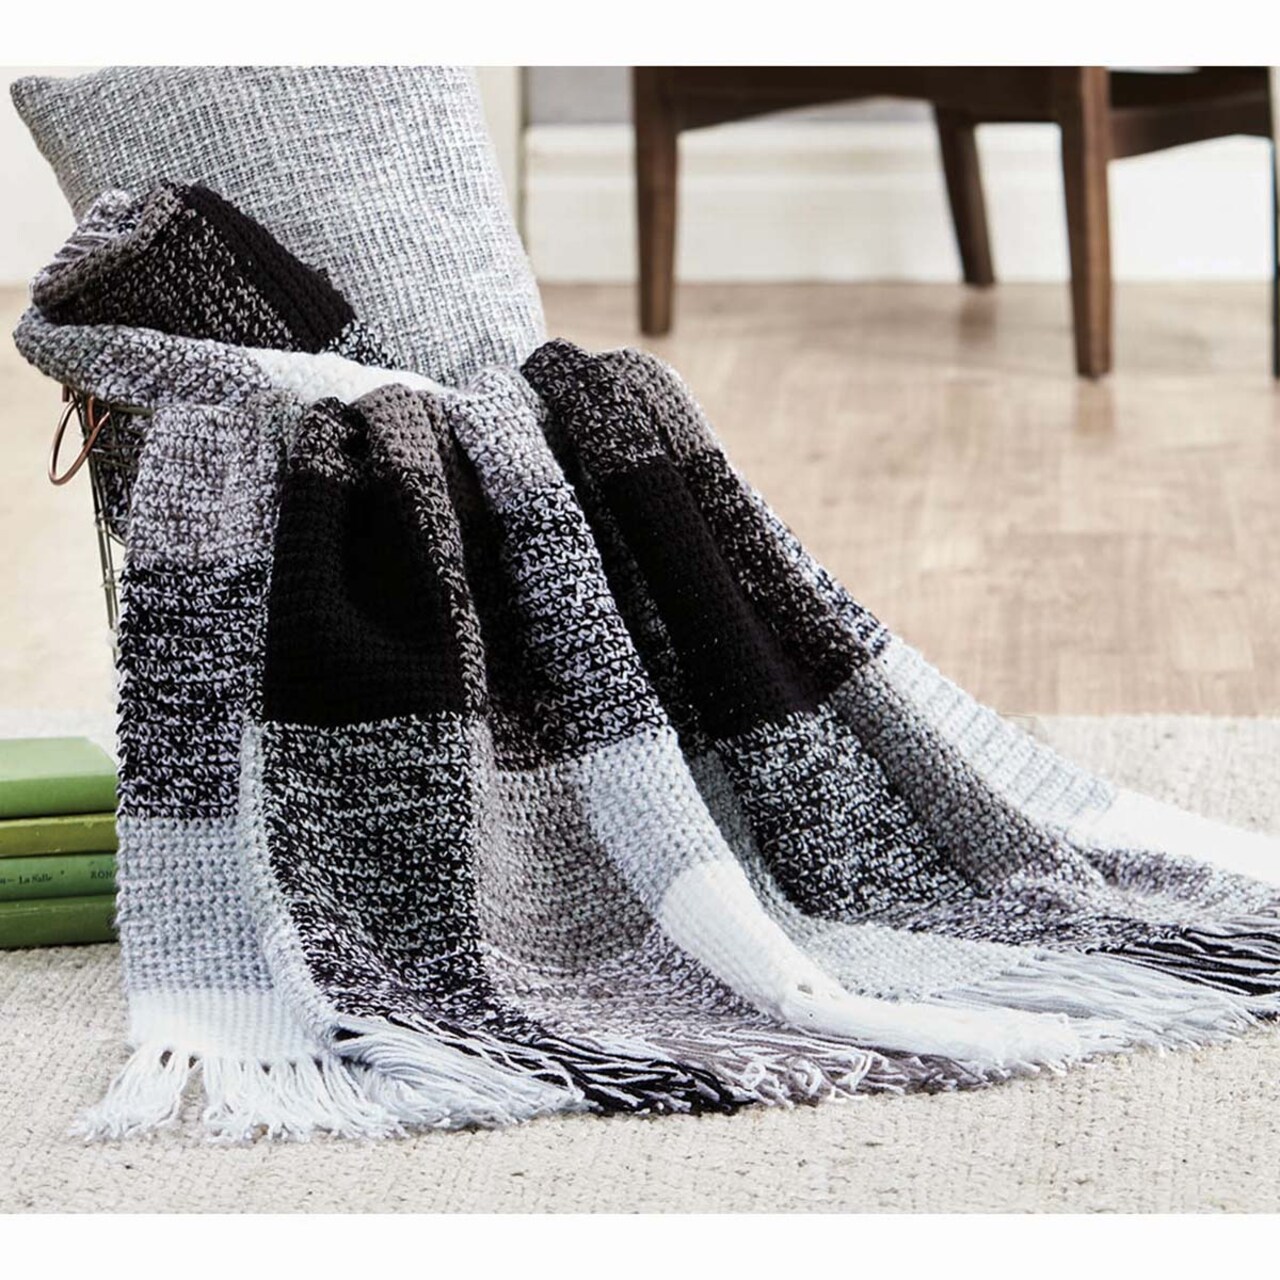 Herrschners  Black &#x26; White Plaid Blanket Crochet Kit